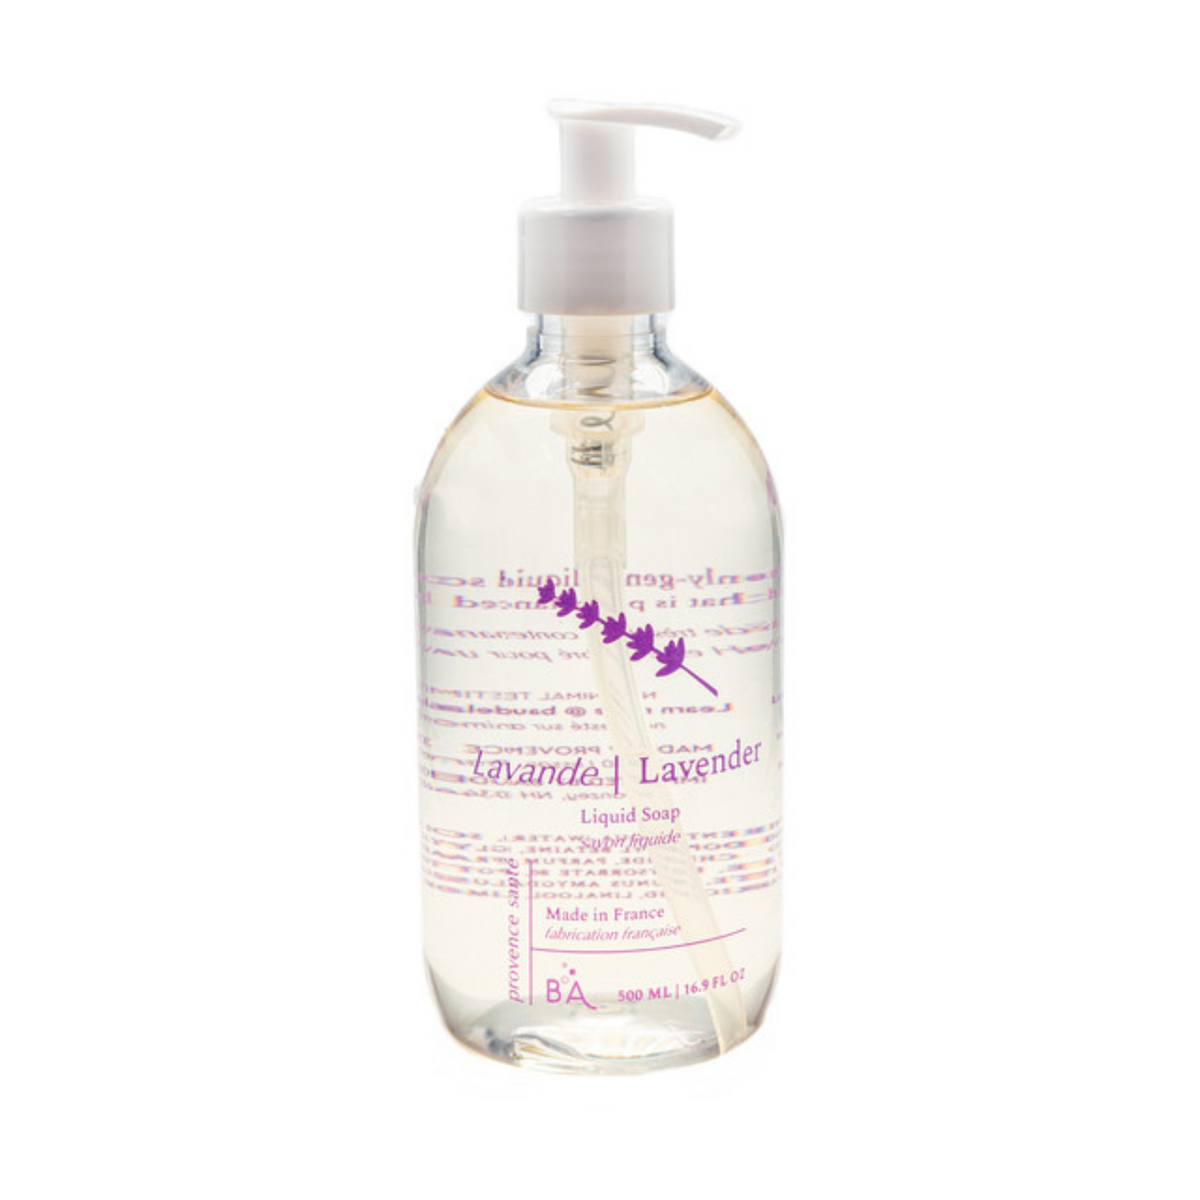 Primary image of Lavender Liquid Soap